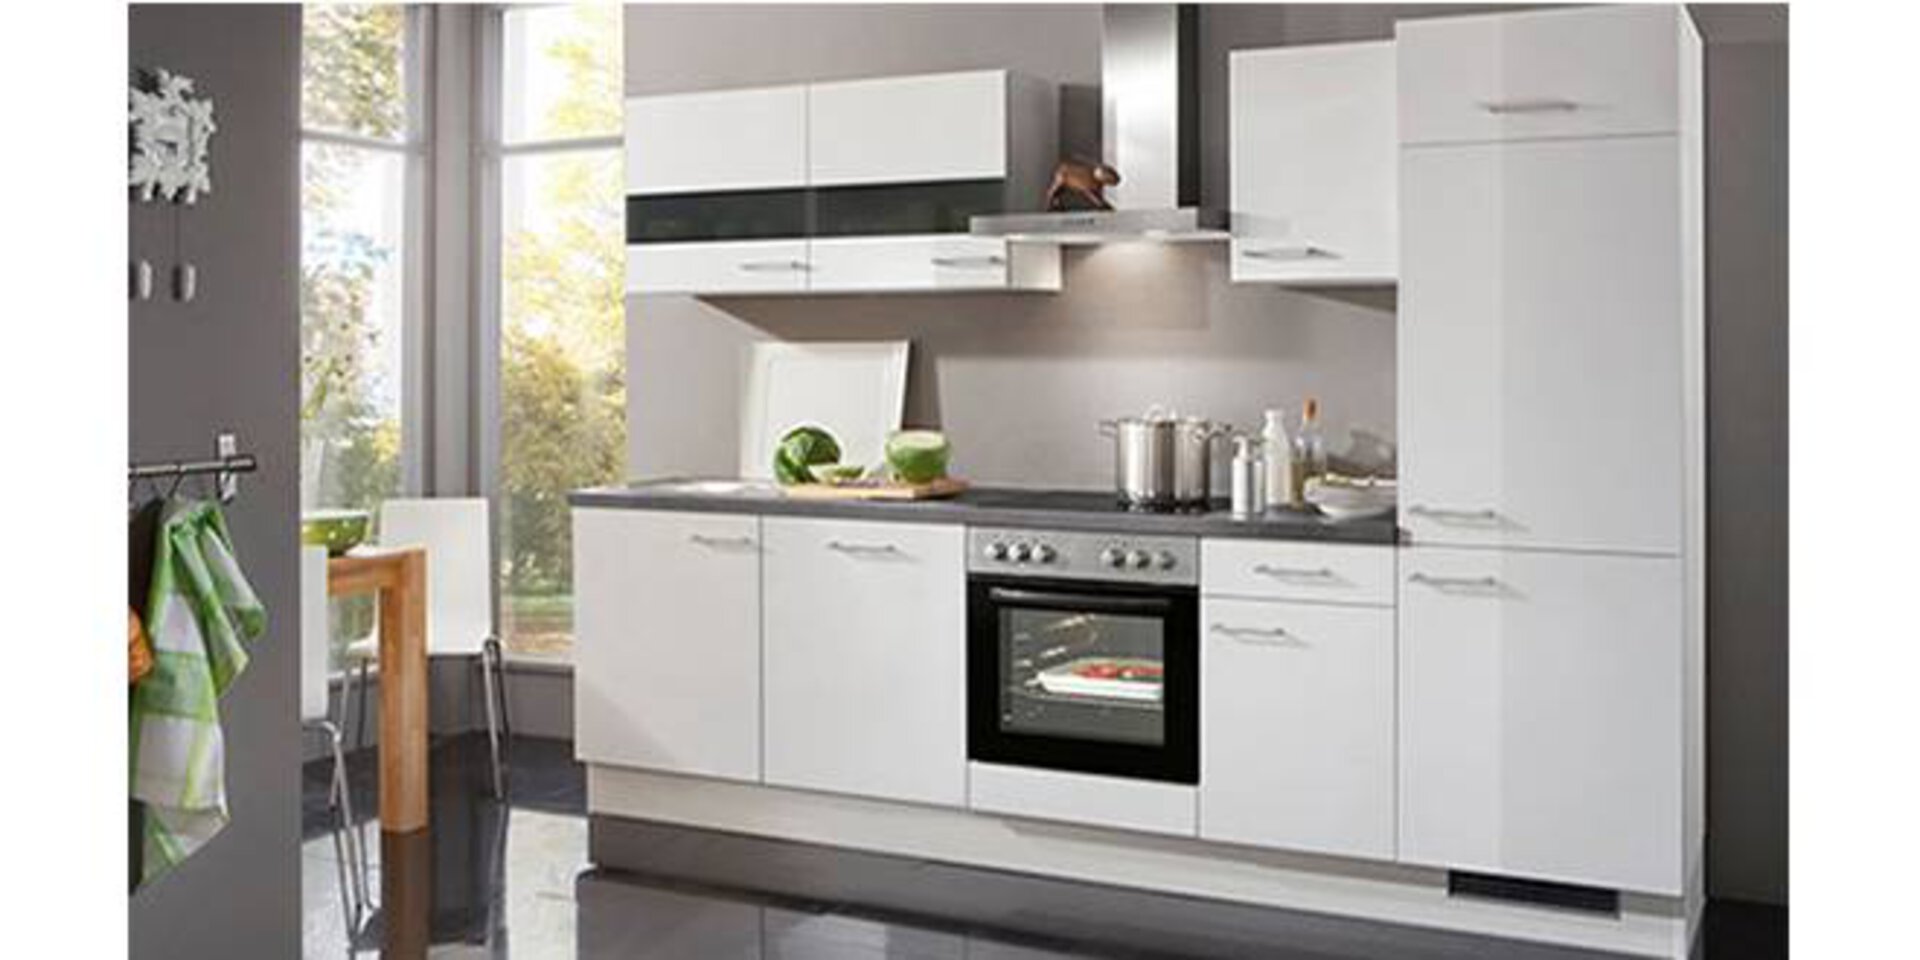 Eine weiße Küchenzeile inklusive Hochschränken zeigt eine typische Kompaktküche.